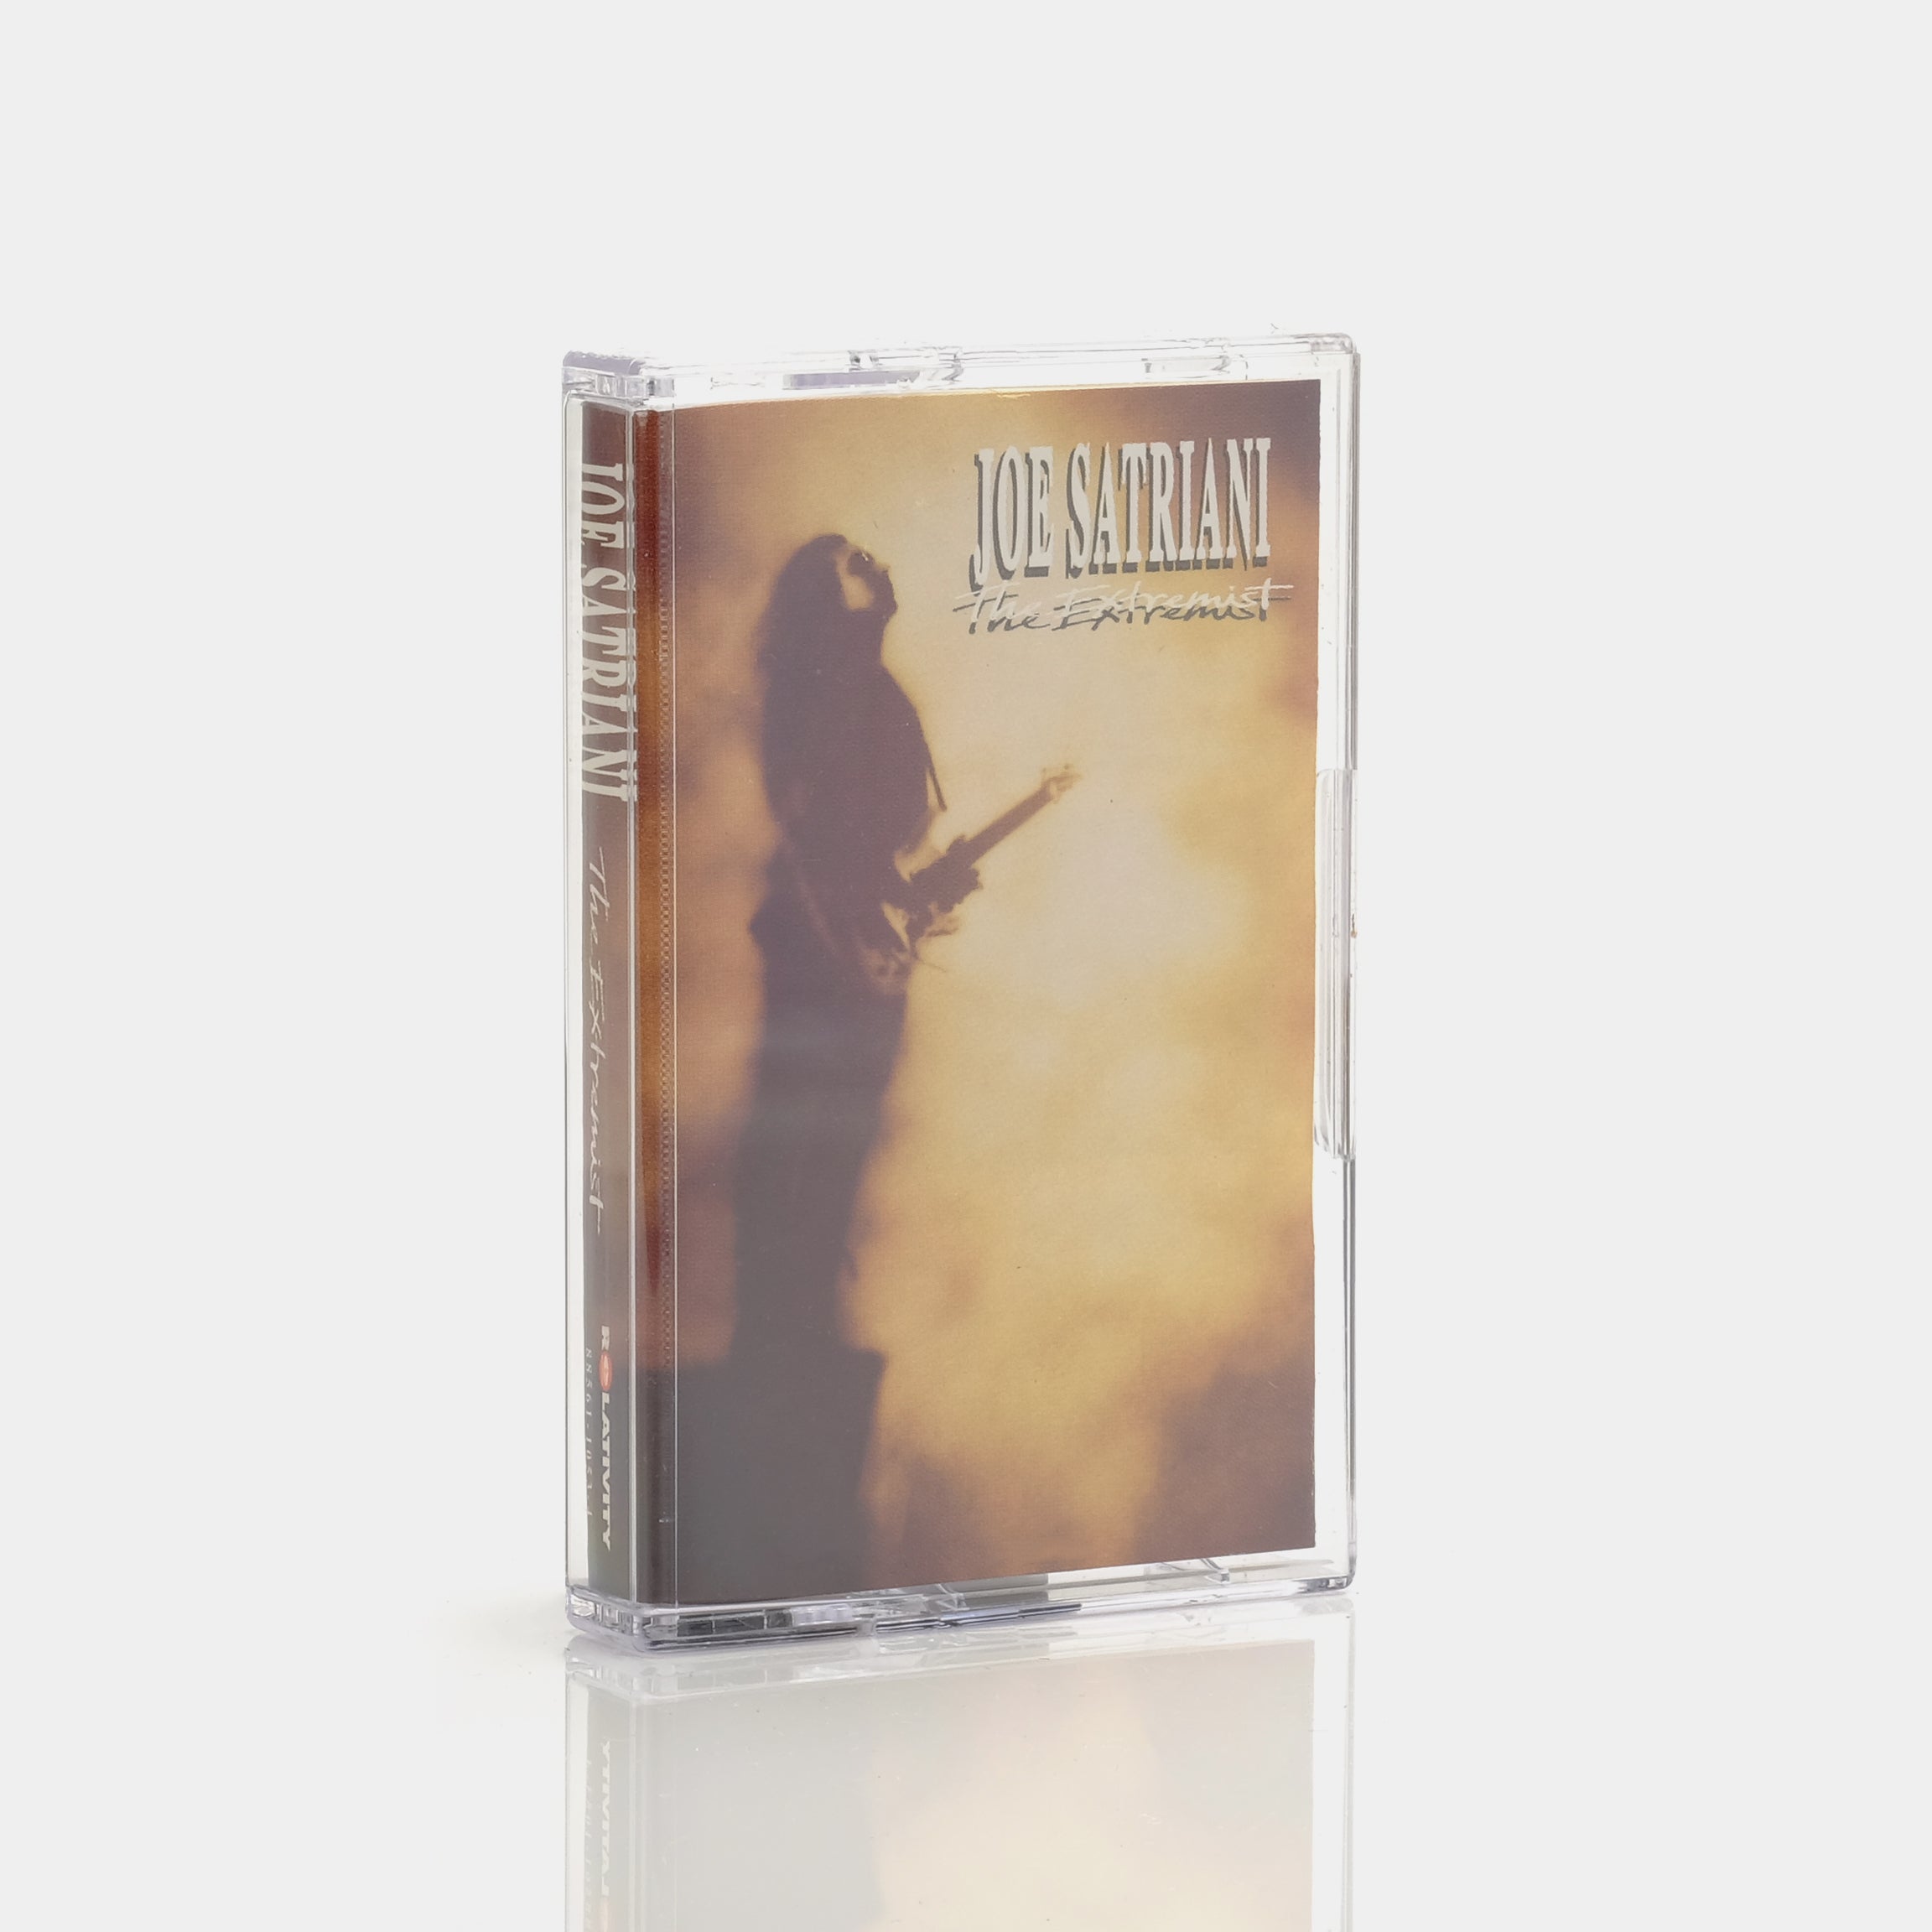 Joe Satriani - The Extremist Cassette Tape